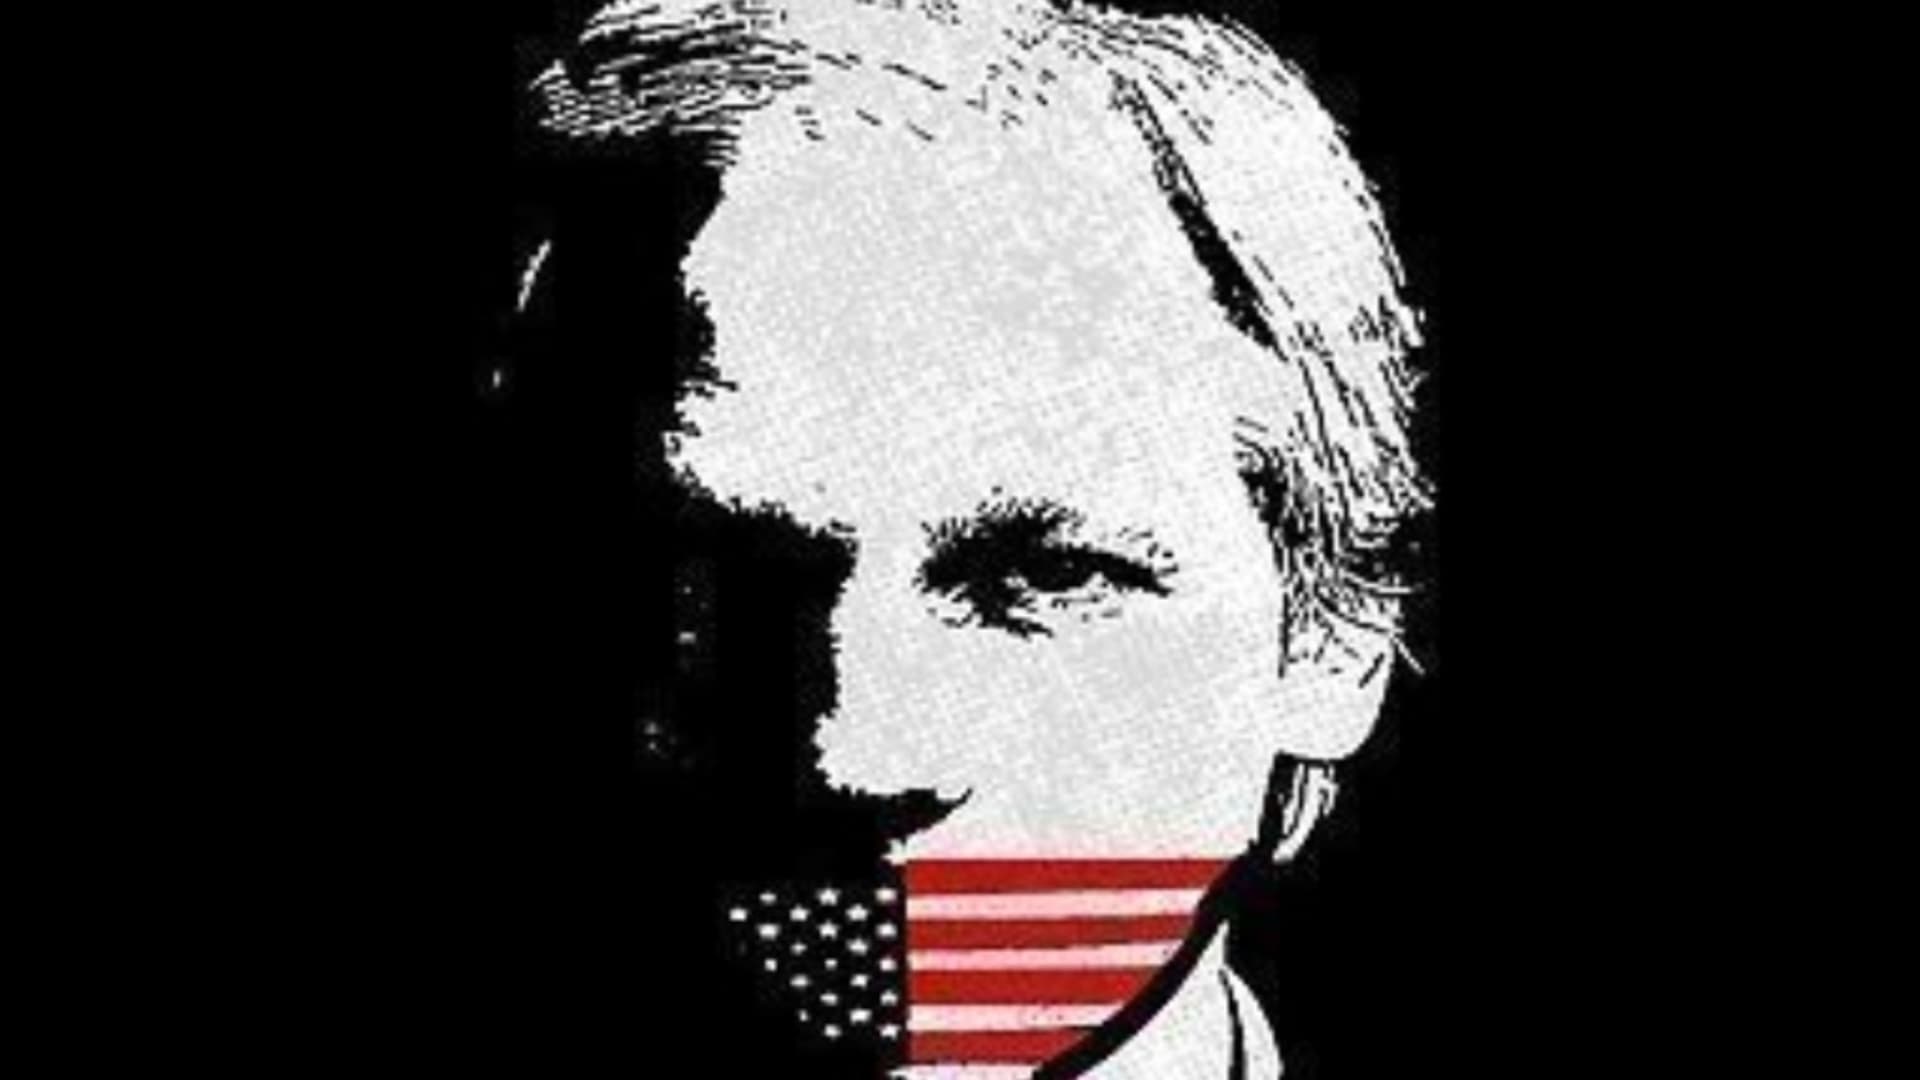 Ilustrační foto: Julian Assange